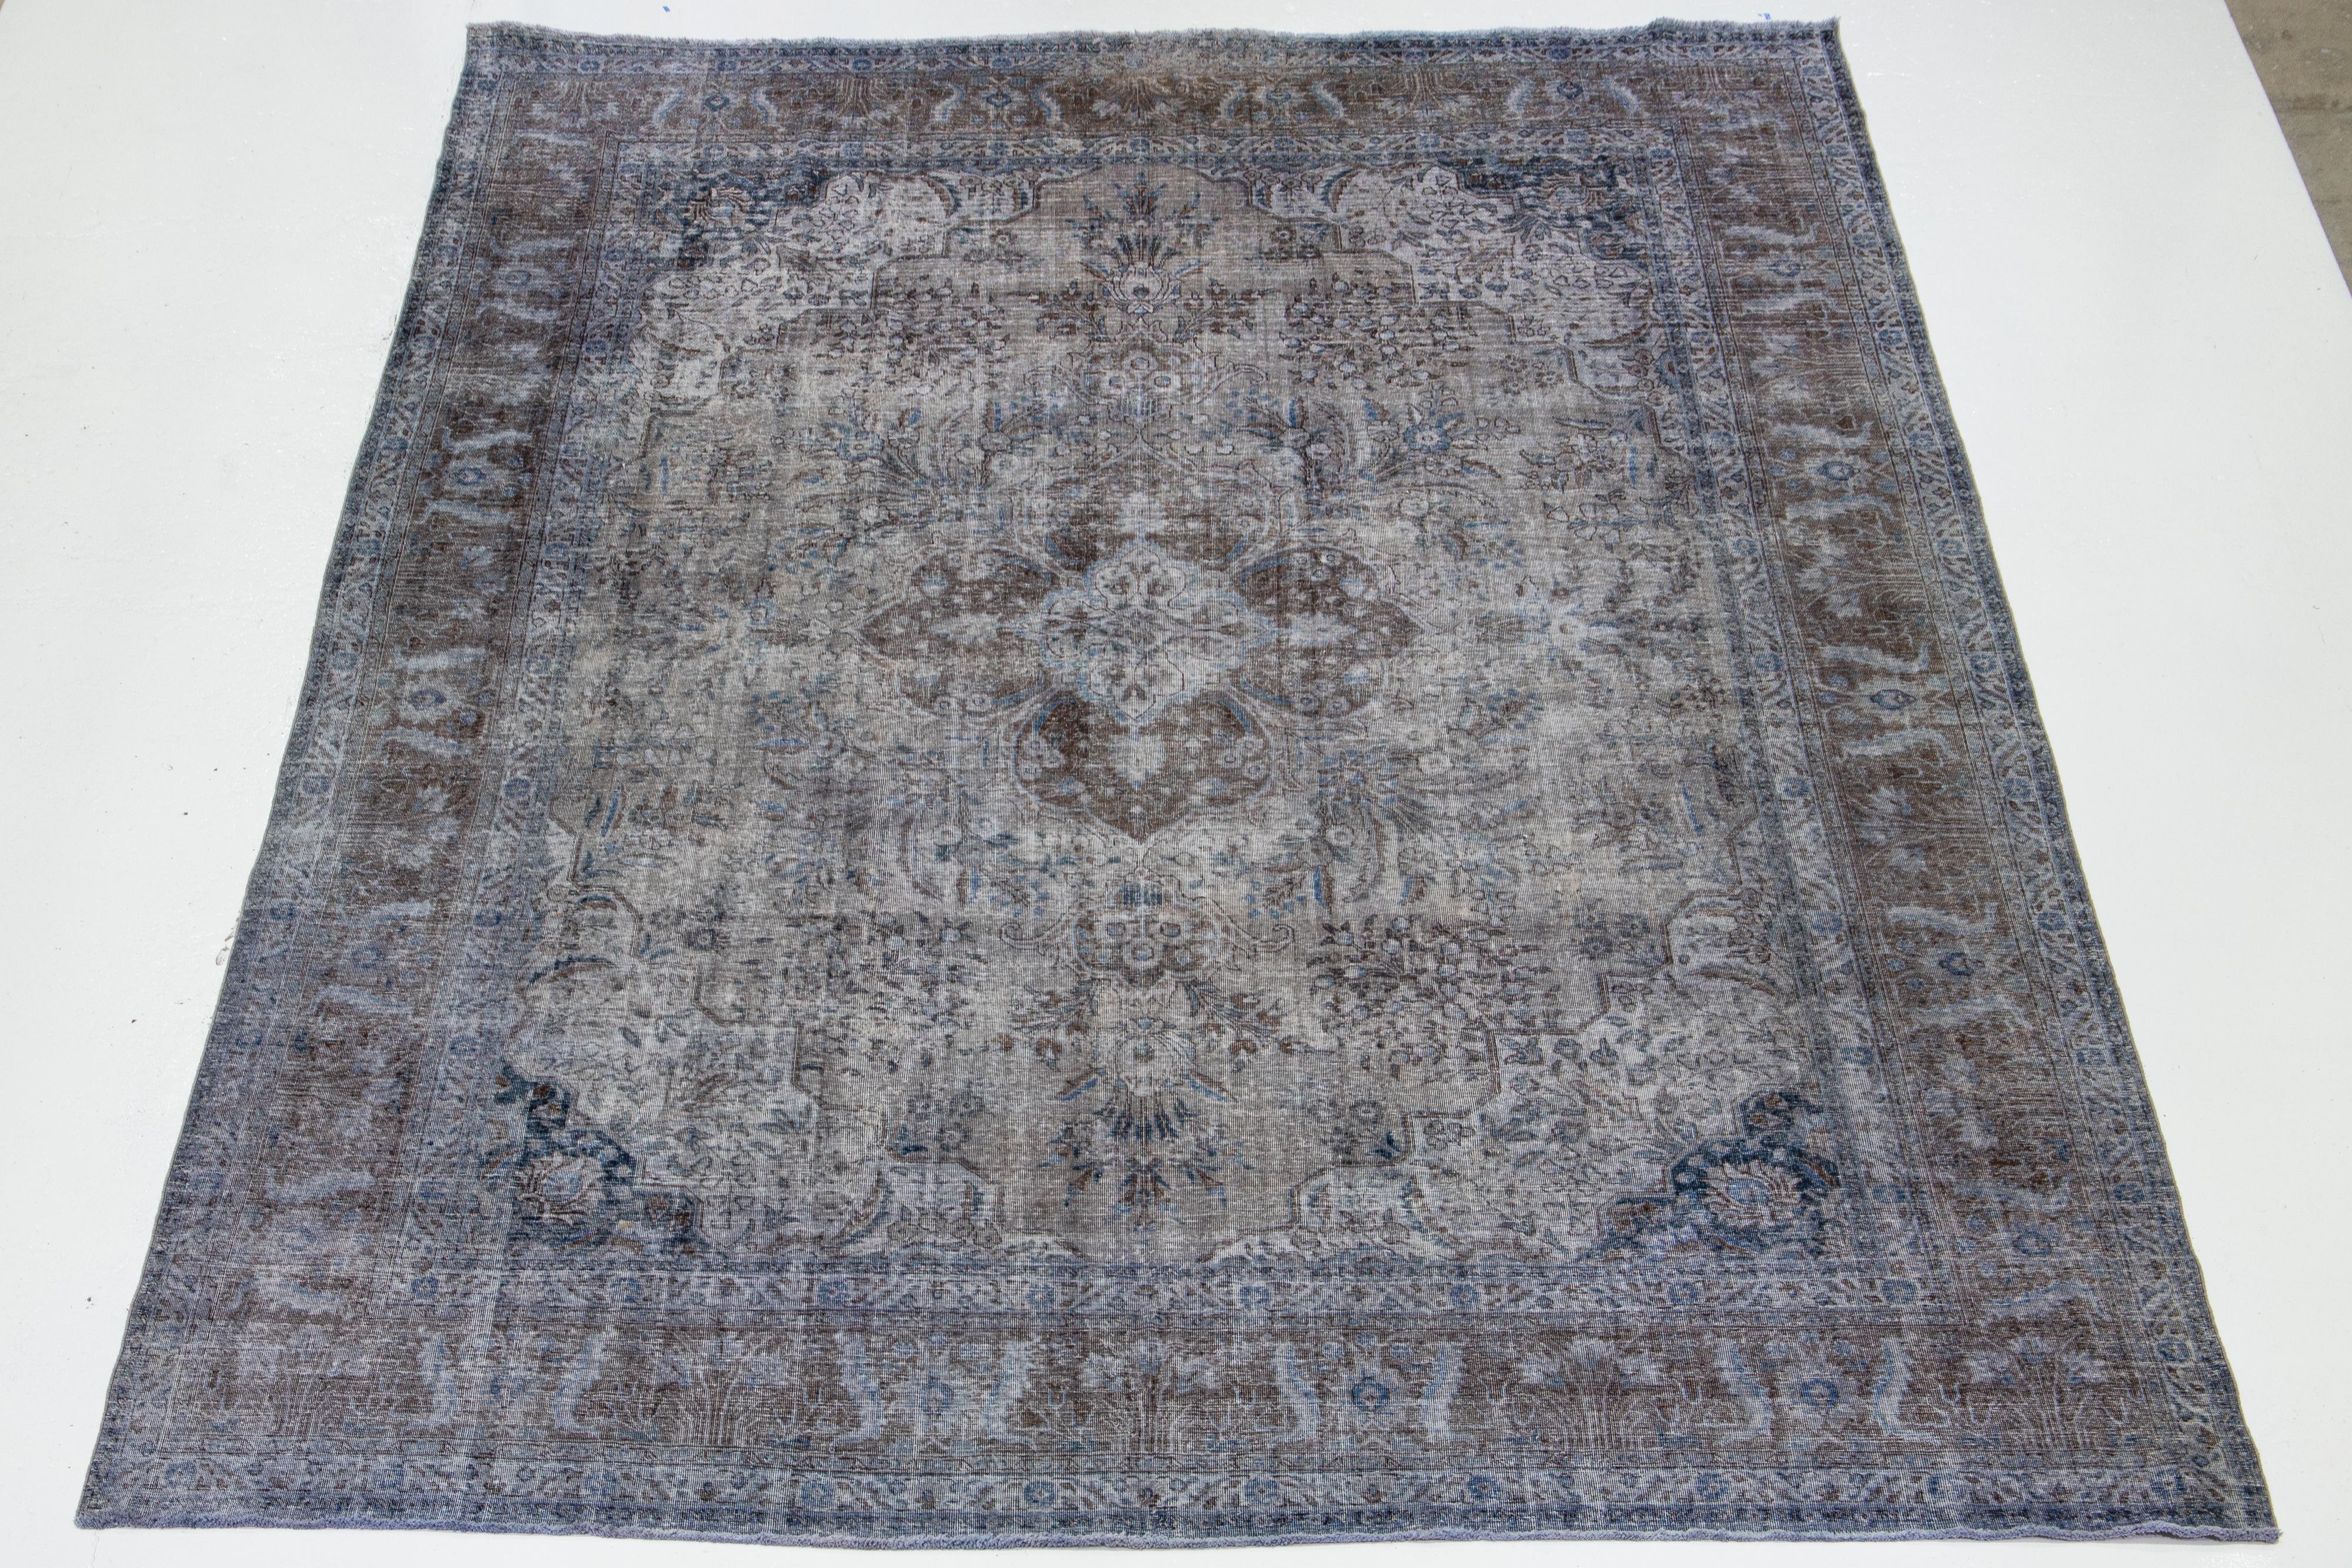 Il s'agit d'un tapis ancien en laine persane nouée à la main, de couleur grise, avec un motif floral sur tout le pourtour, avec des accents bruns et bleus.

Ce tapis mesure 11'3'' x 14'11